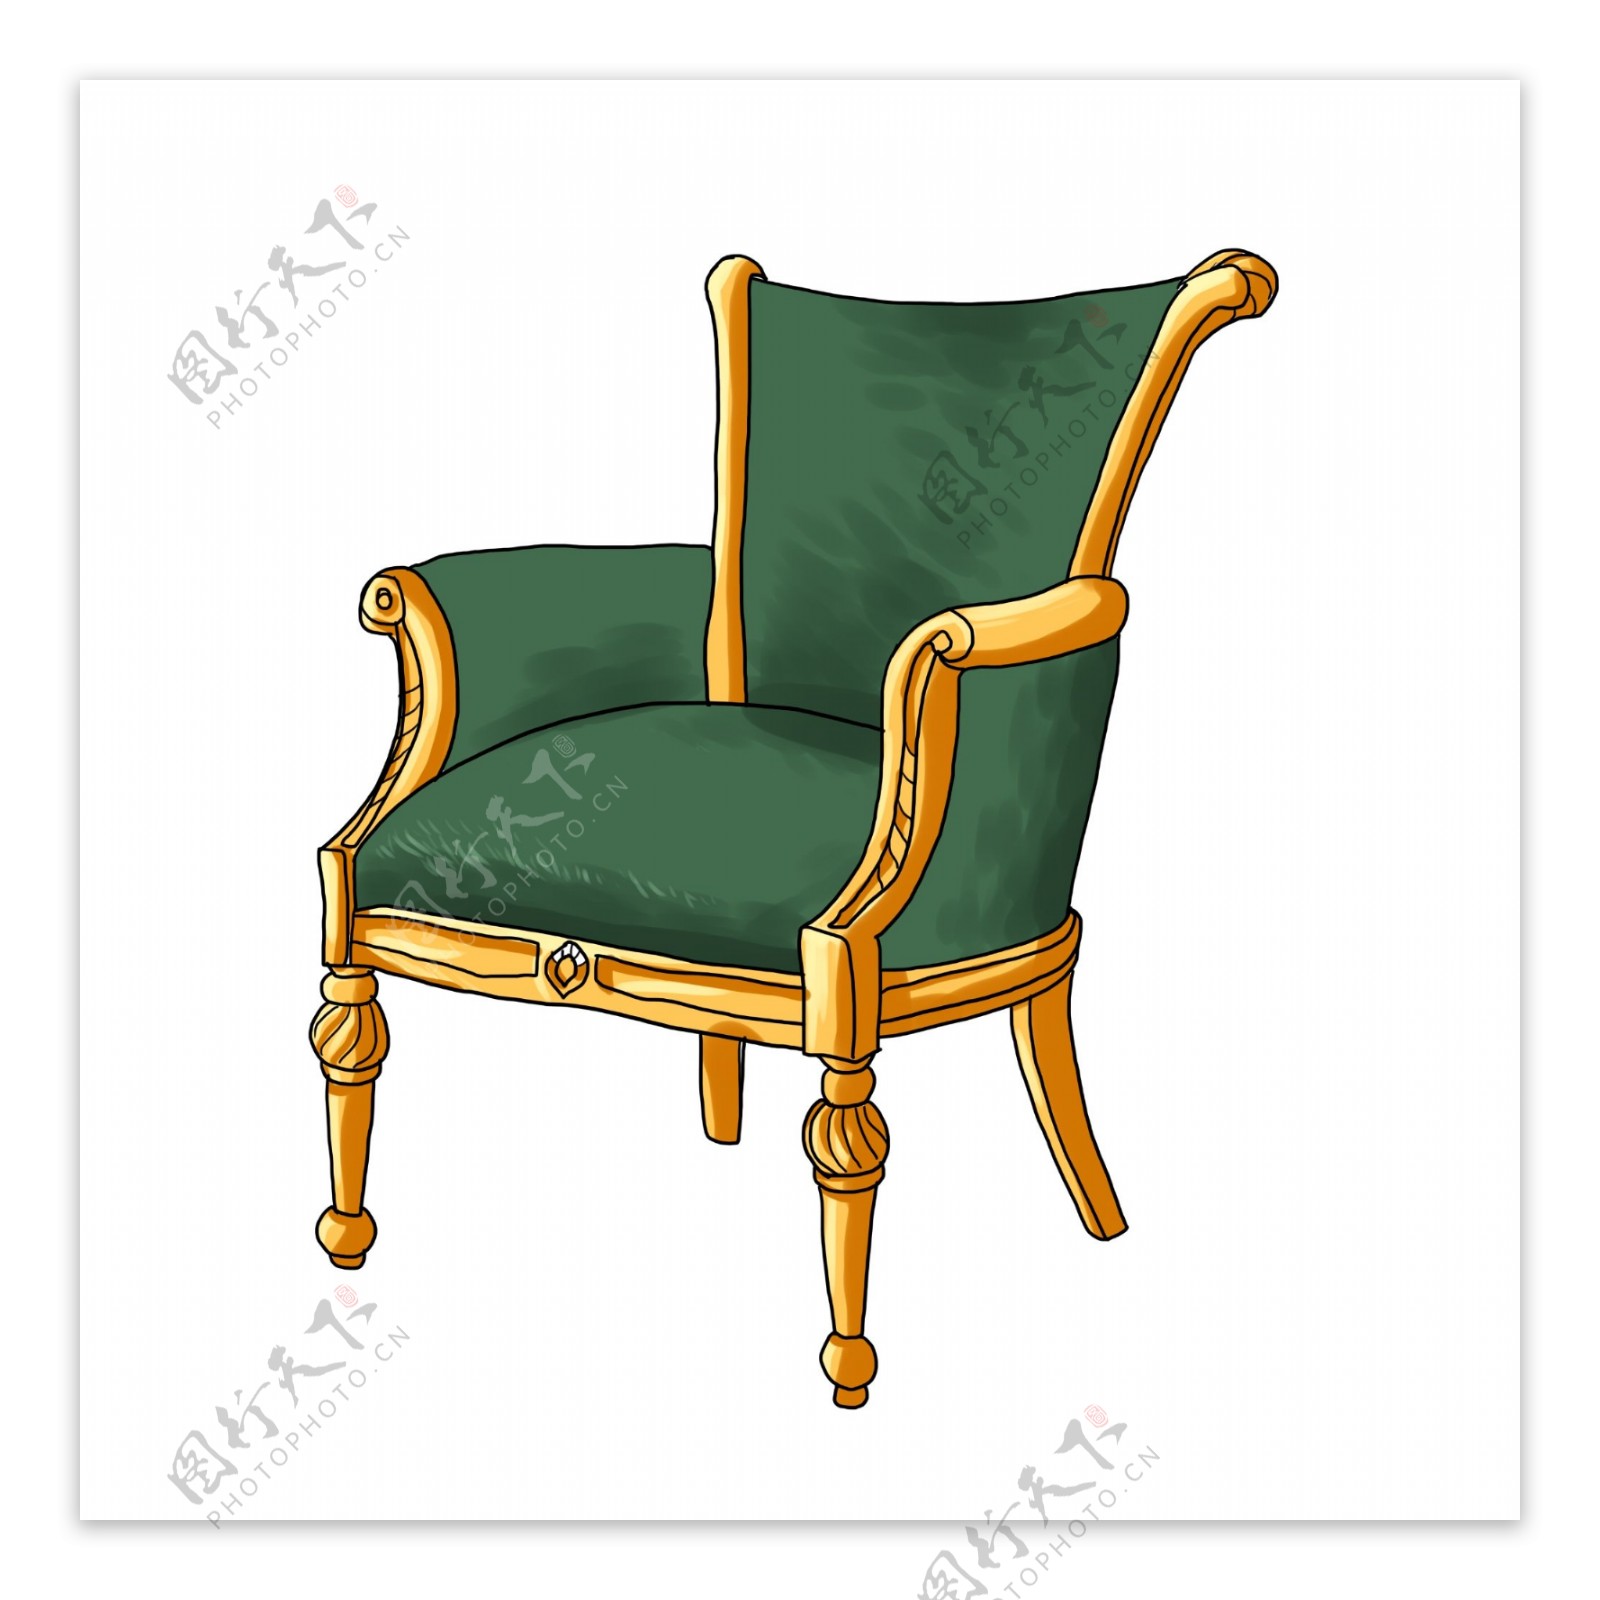 高档绿色椅子插画